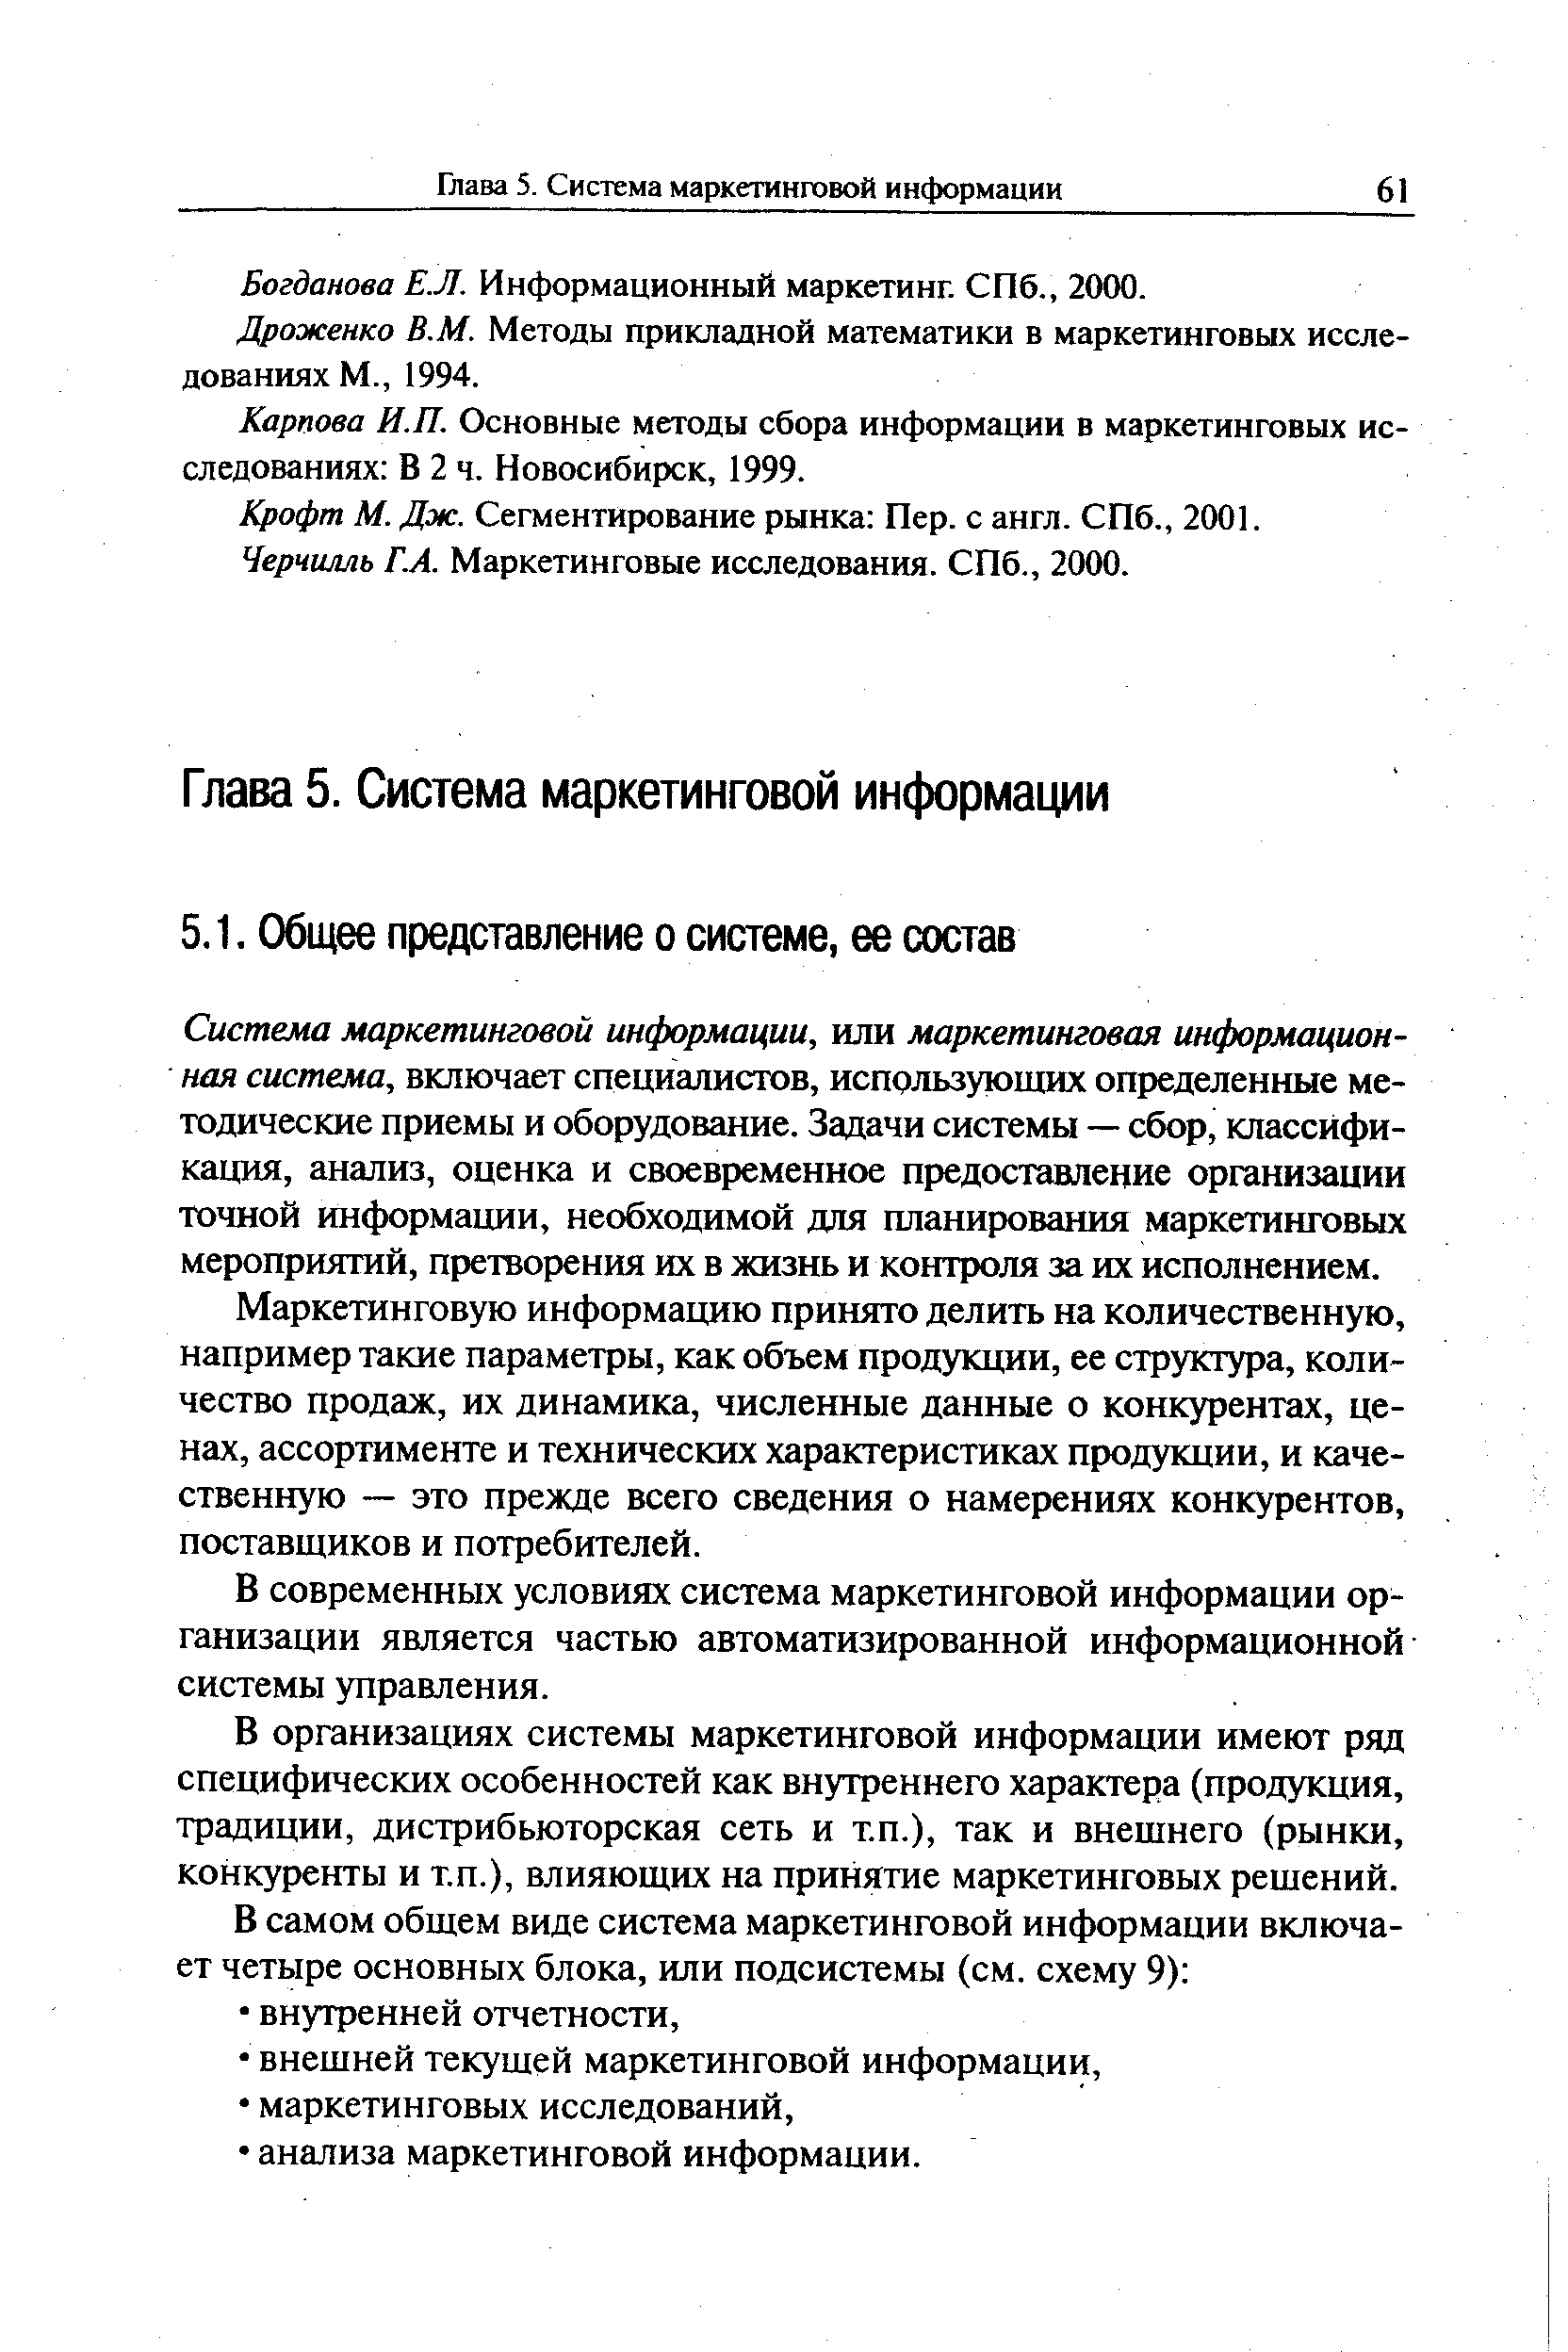 Богданова ЕЛ. Информационный маркетинг. СПб., 2000.
